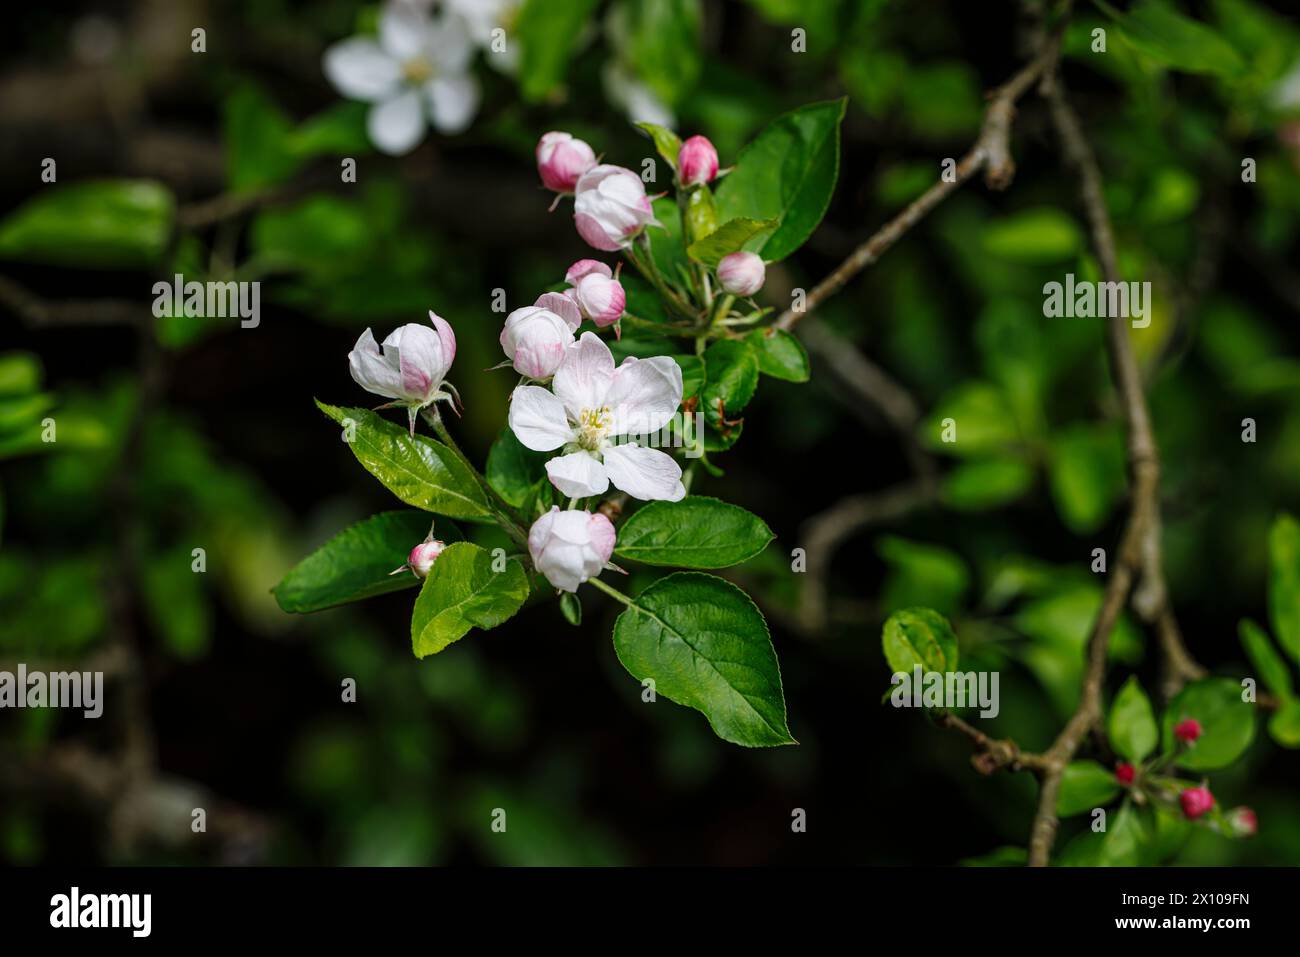 Nahaufnahme der hübschen rosafarbenen und weißen Apfelbäume (Malus domestica) im Frühling in einem Garten in Surrey, Südosten Englands Stockfoto